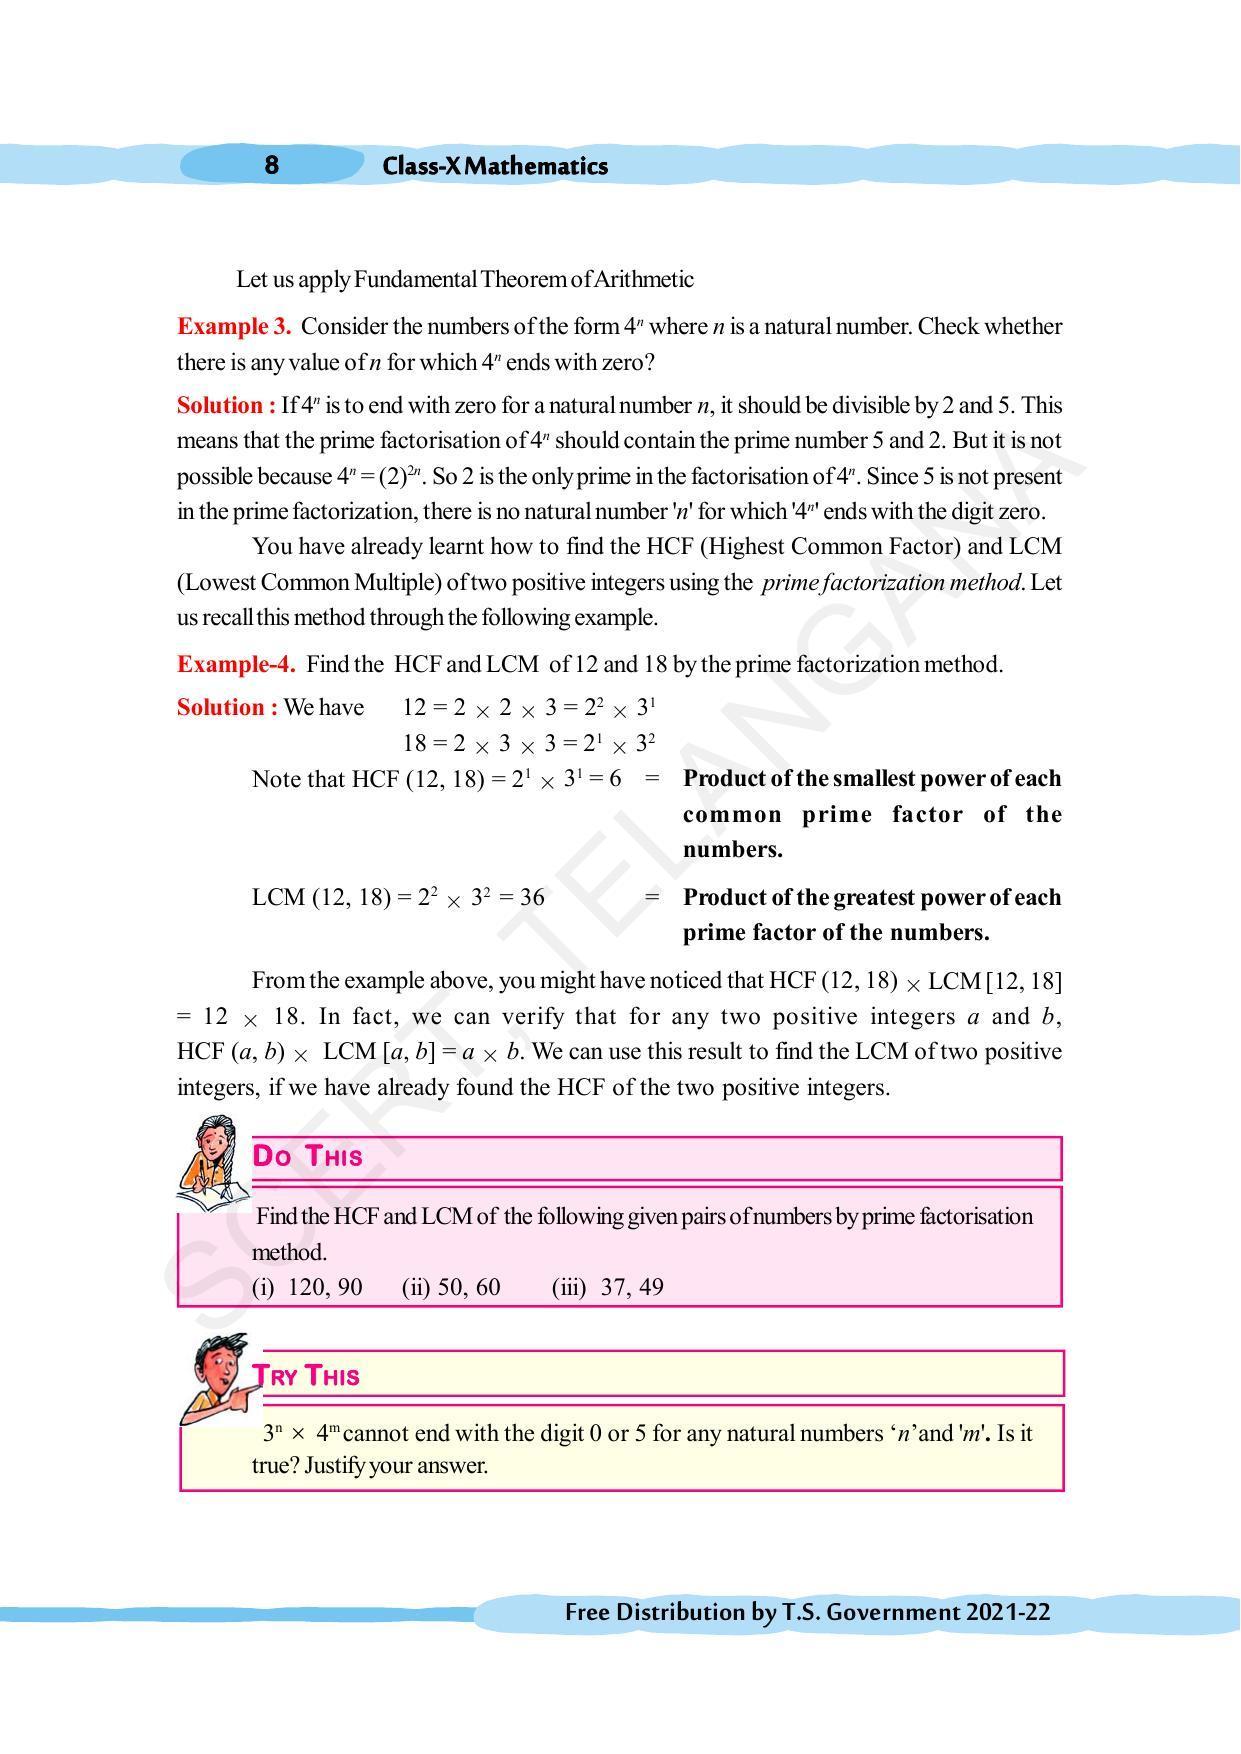 TS SCERT Class 10 Maths (English Medium) Text Book - Page 18